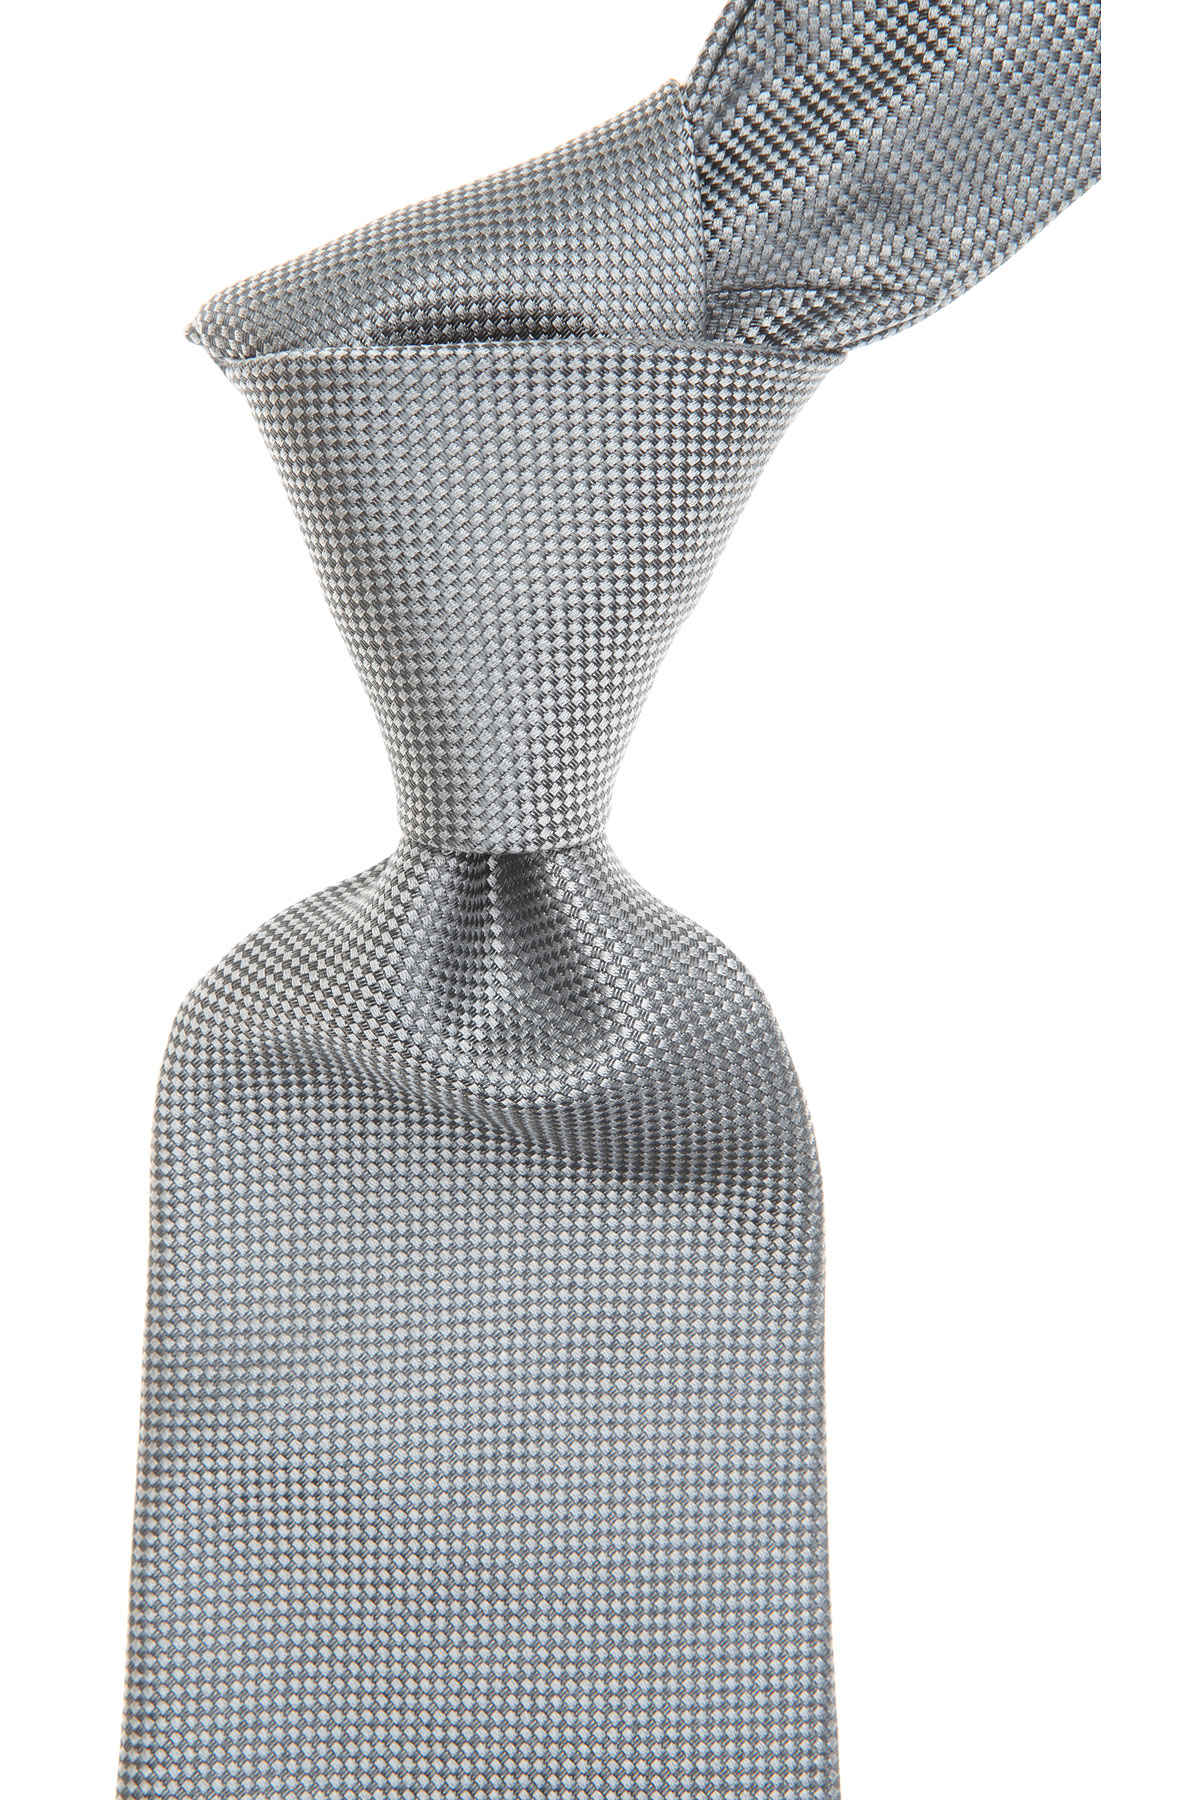 Cravates Dupont , Aluminium délavé, Soie, 2017